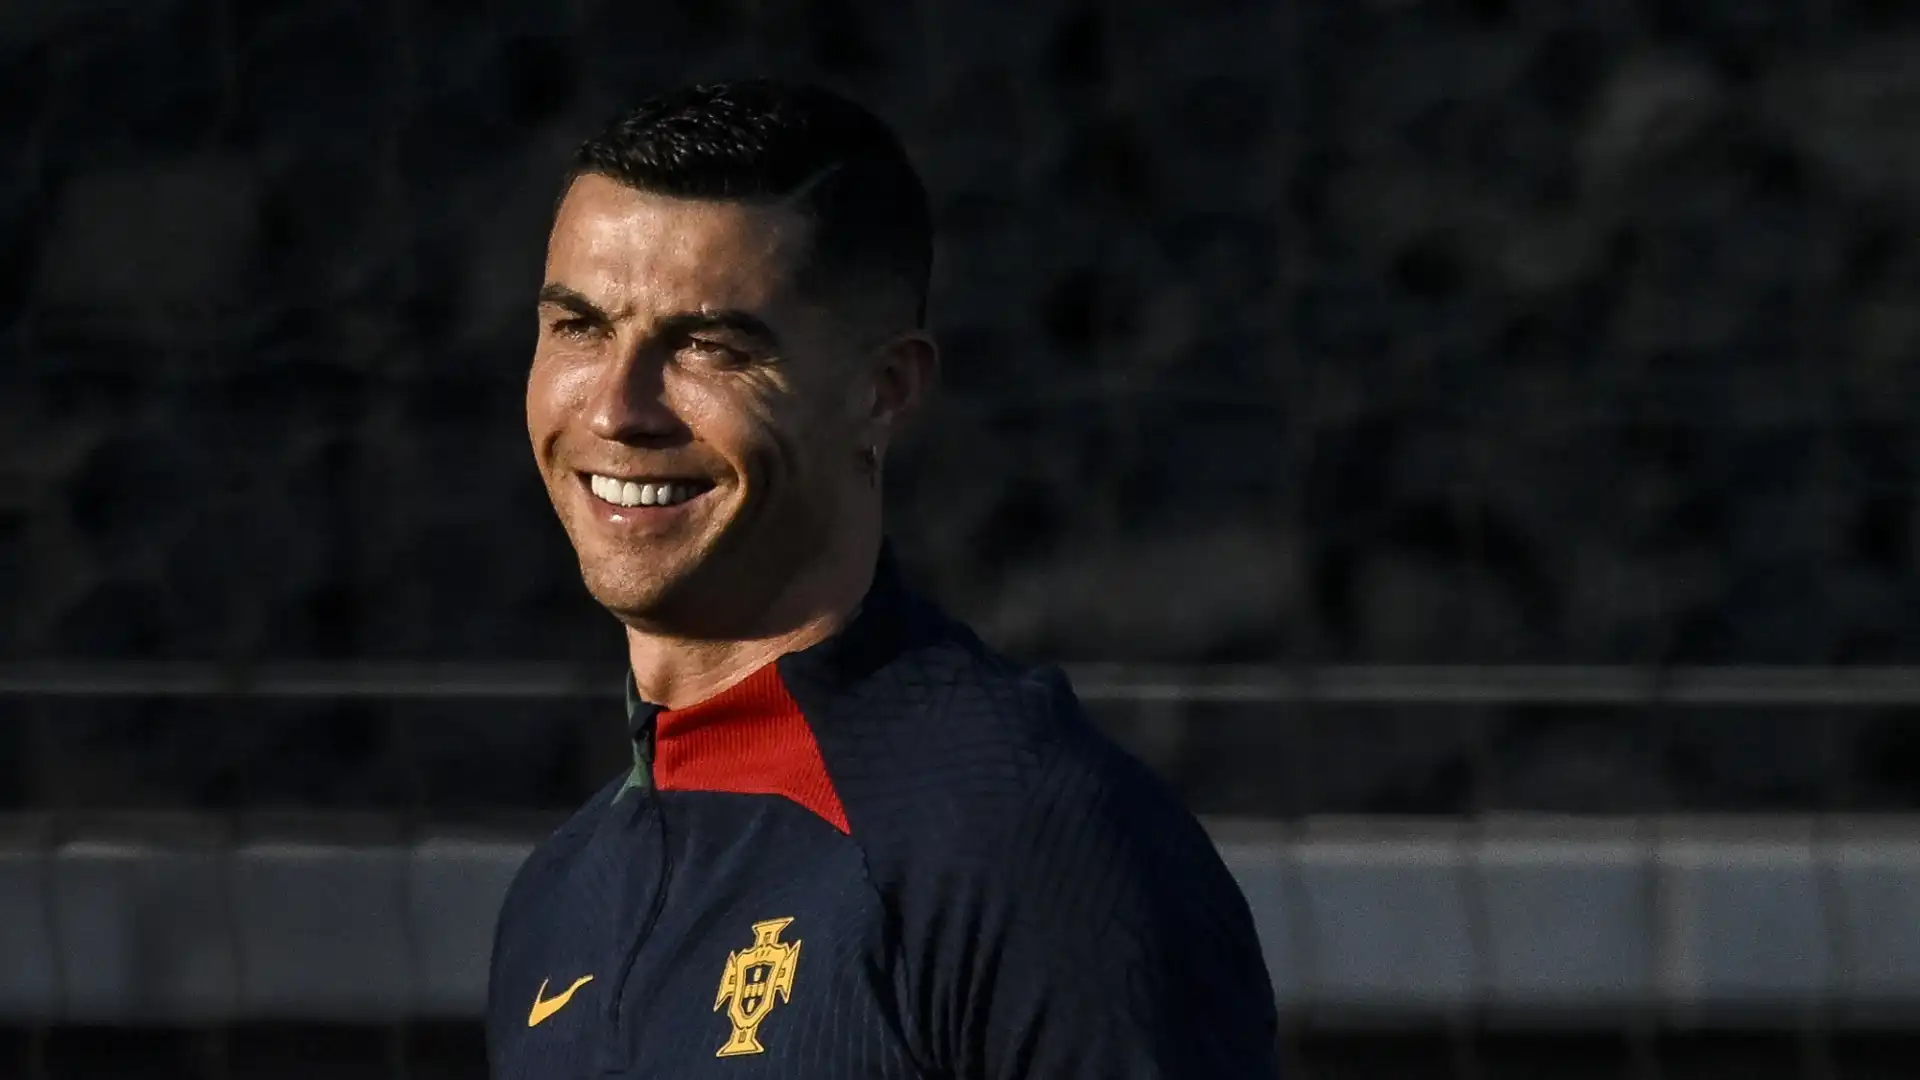 La nuova era del Portogallo parte da Cristiano Ronaldo